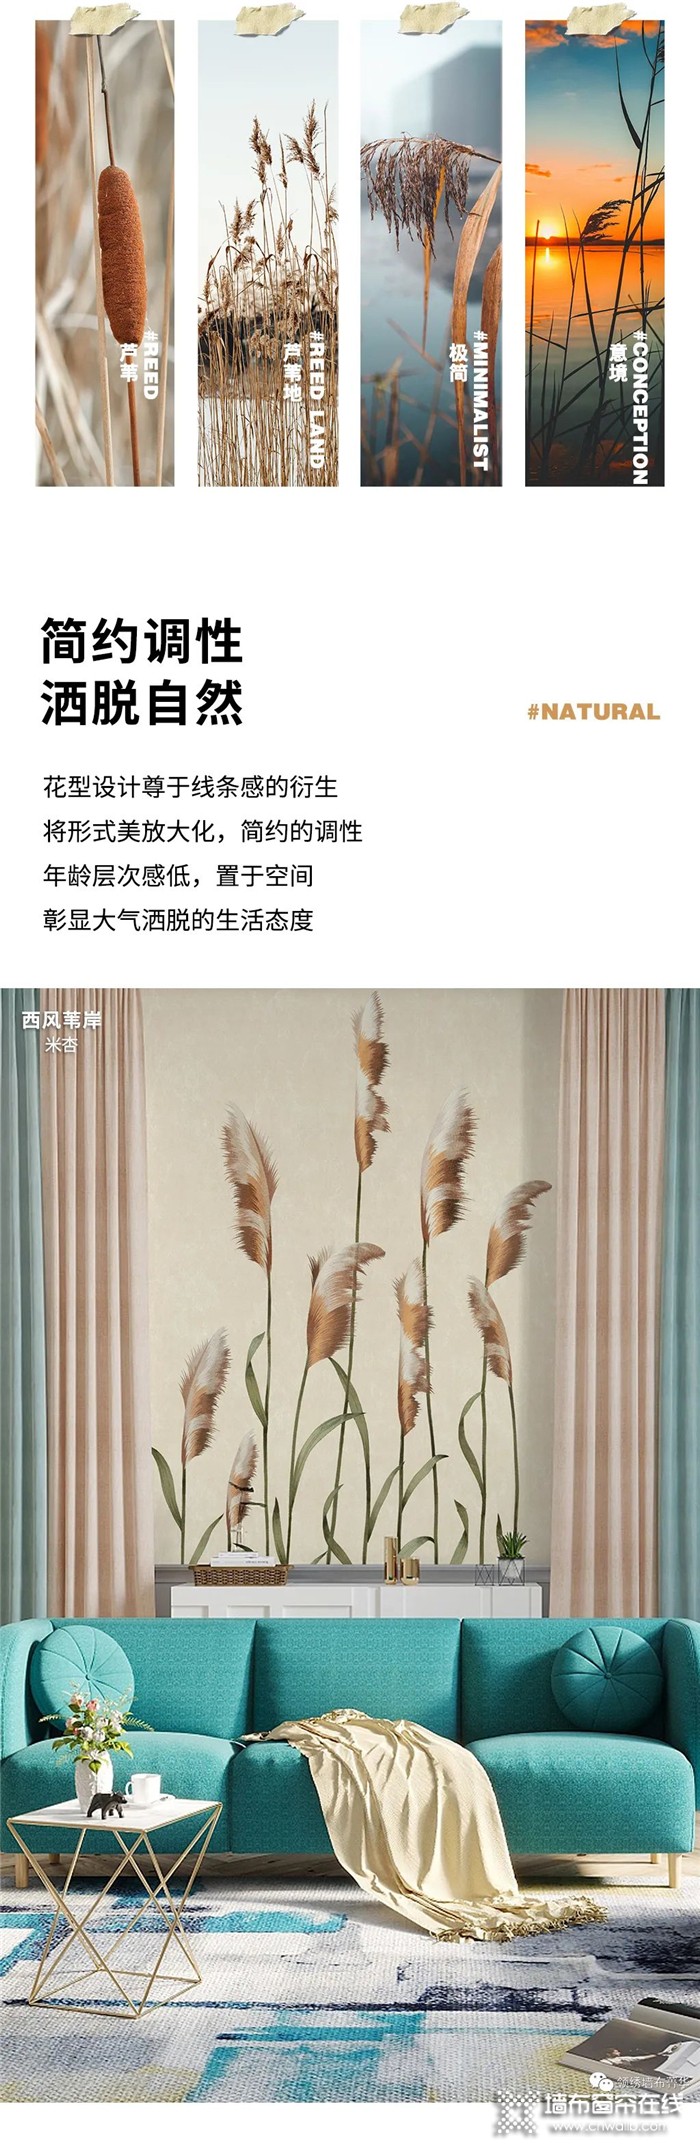 领绣·菁华——给生活留一点片段与诗意